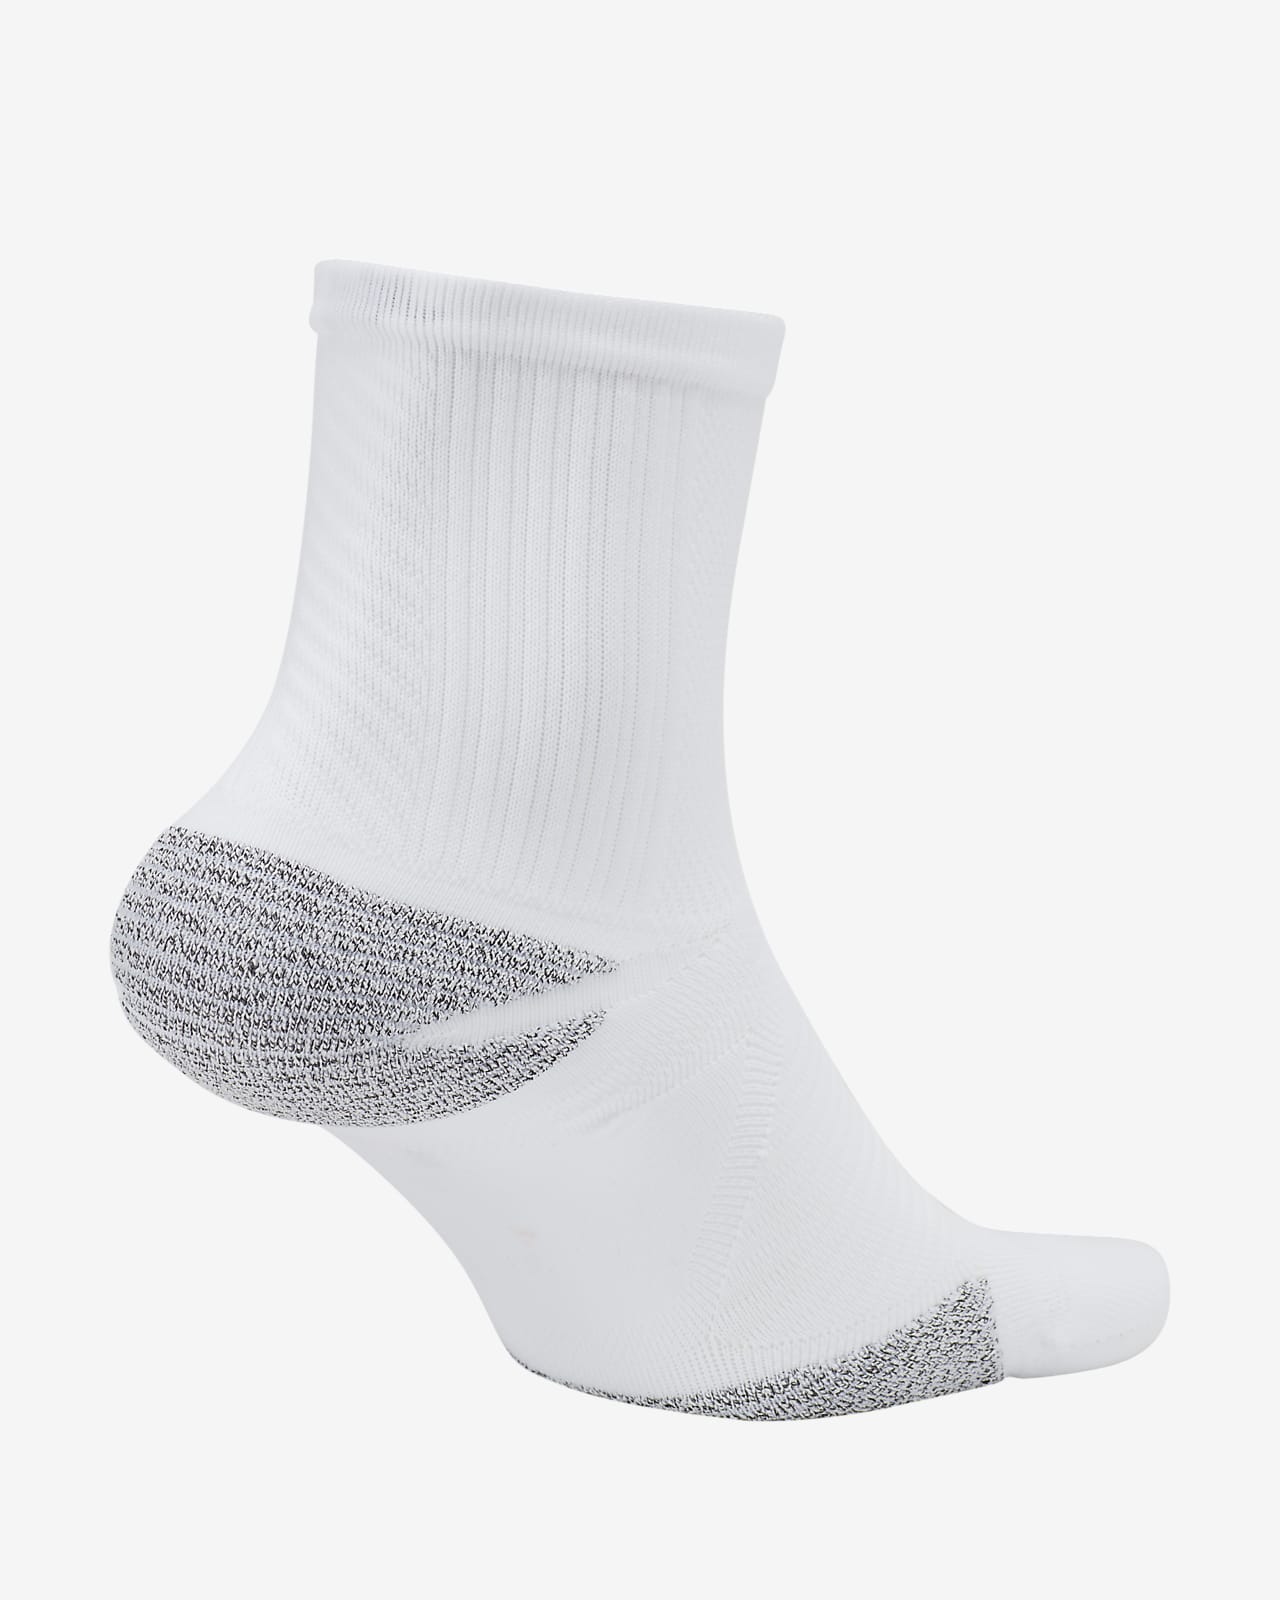 nike white ankle socks mens